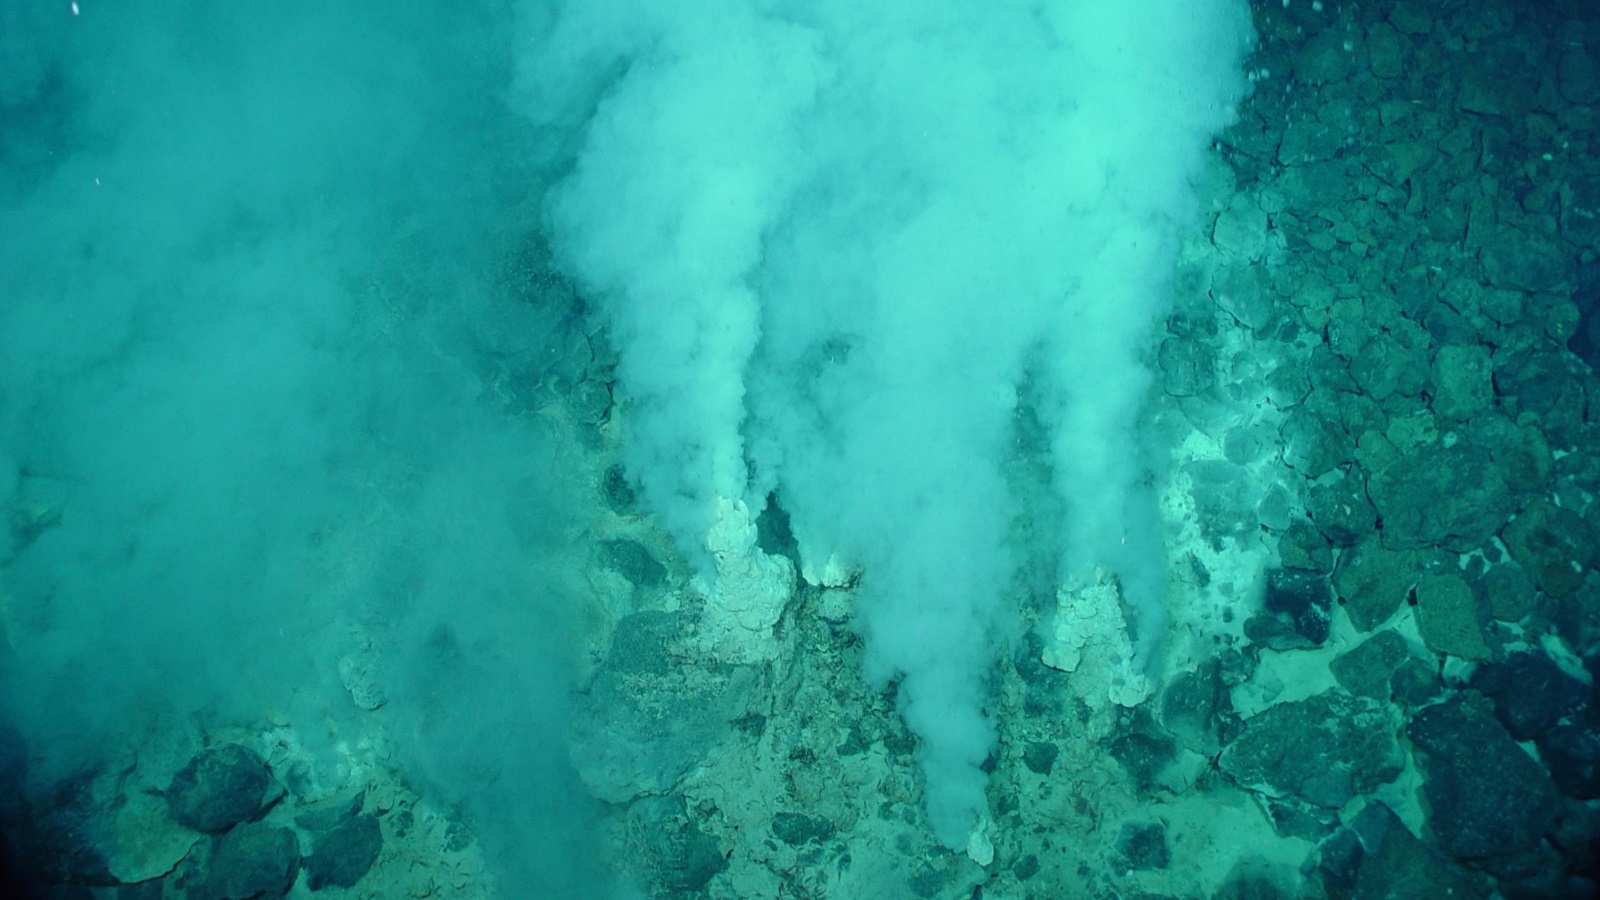 فتحات حرارية مائية في قاع المحيط (ويكيميديا كومونز)